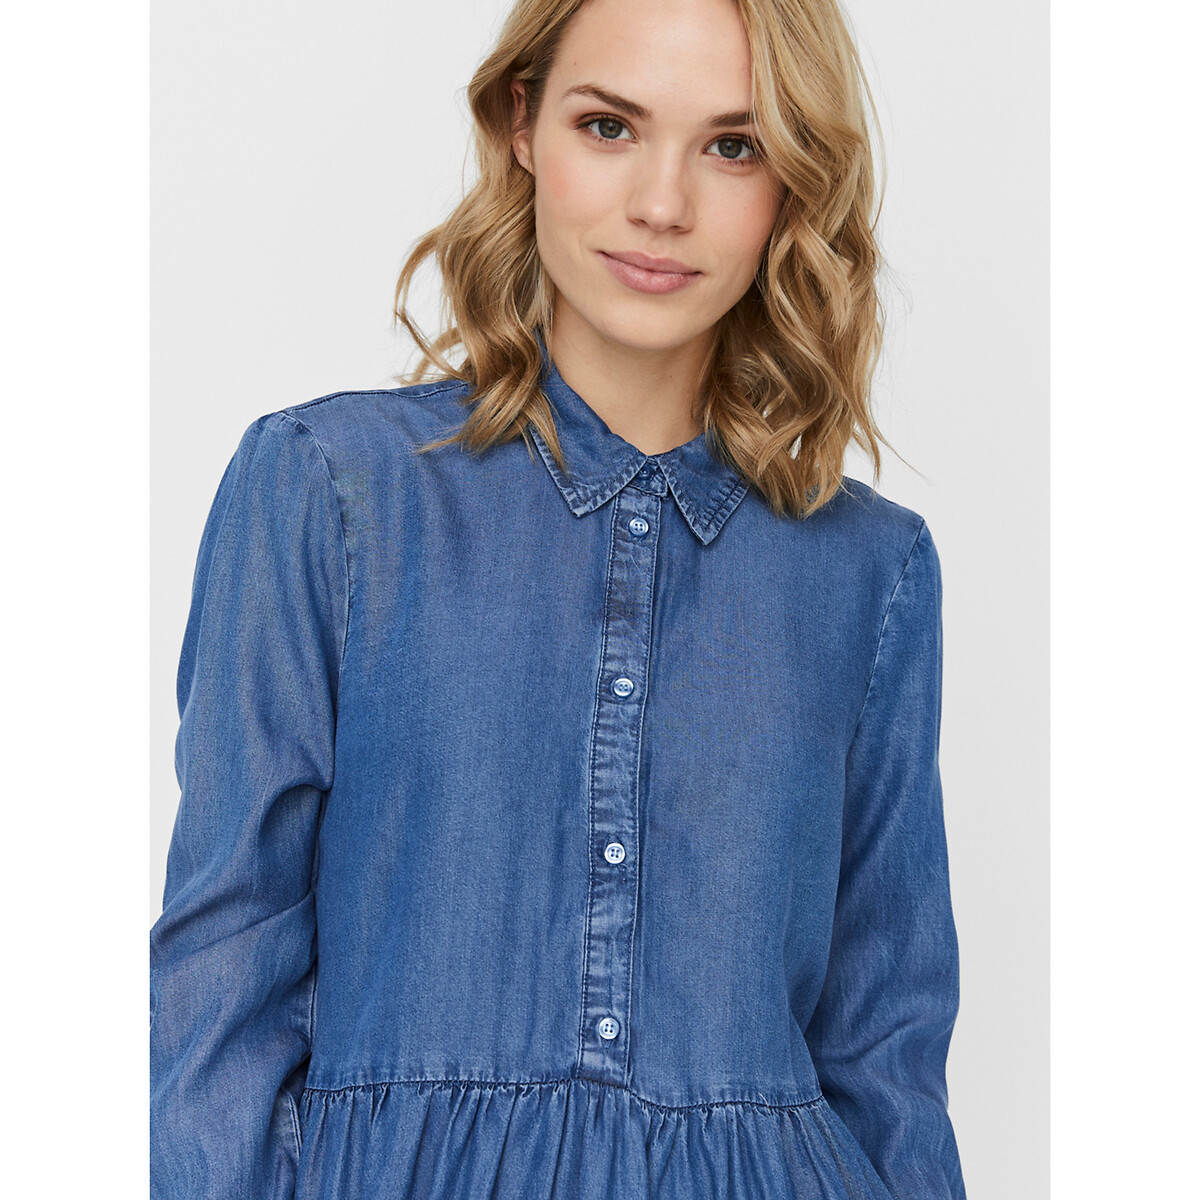 Платье-рубашка La Redoute лиоцелла S синий, размер S - фото 4